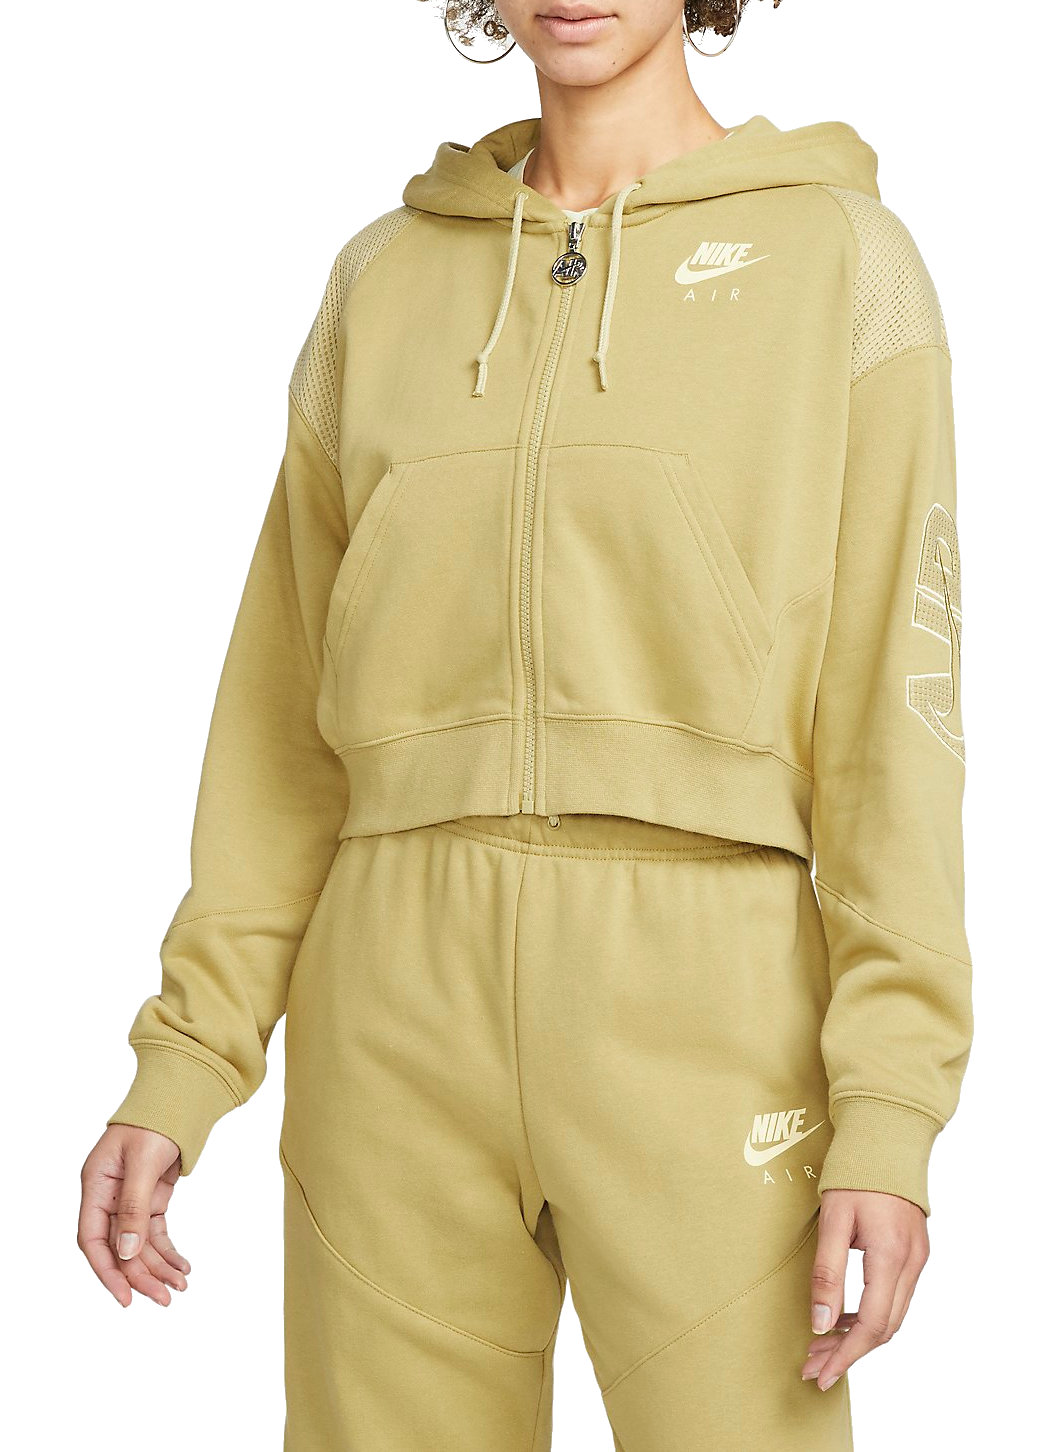 Hooded sweatshirt Nike Womens Air